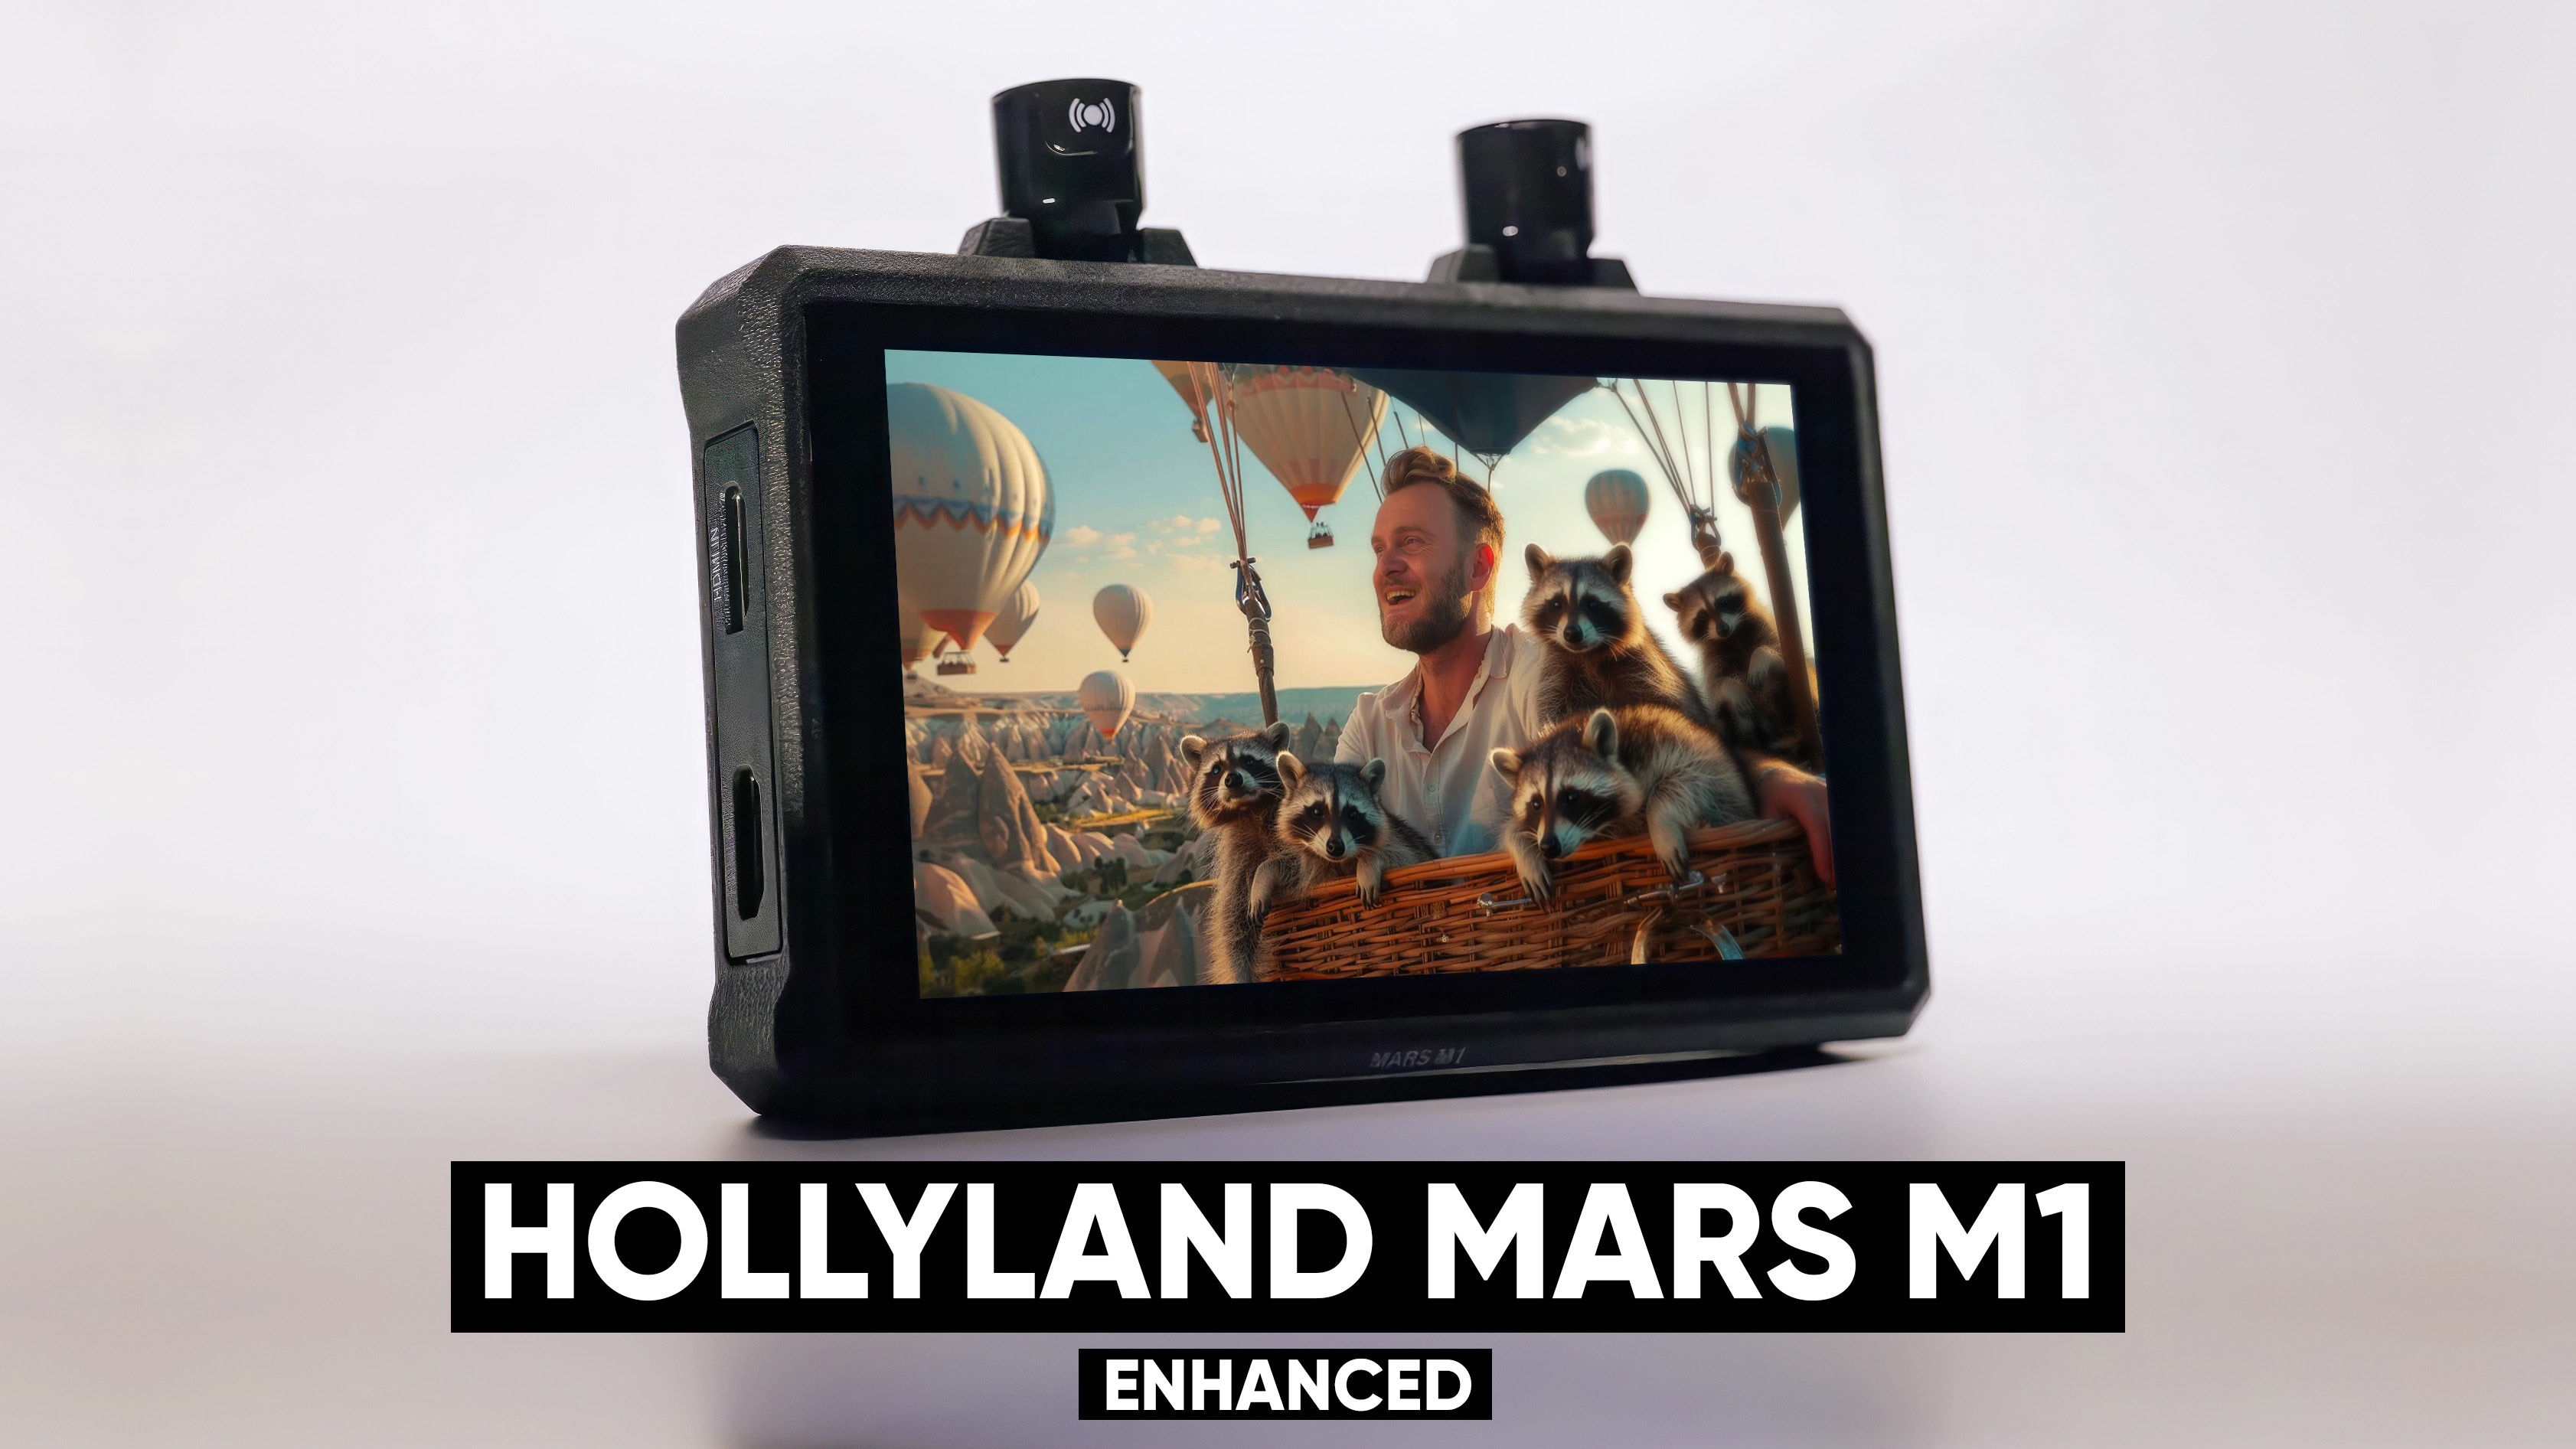 Обзор Hollyland Mars M1 Enhanced. Накамерный монитор, сендер и ресивер - 3 в 1. Тест задержки